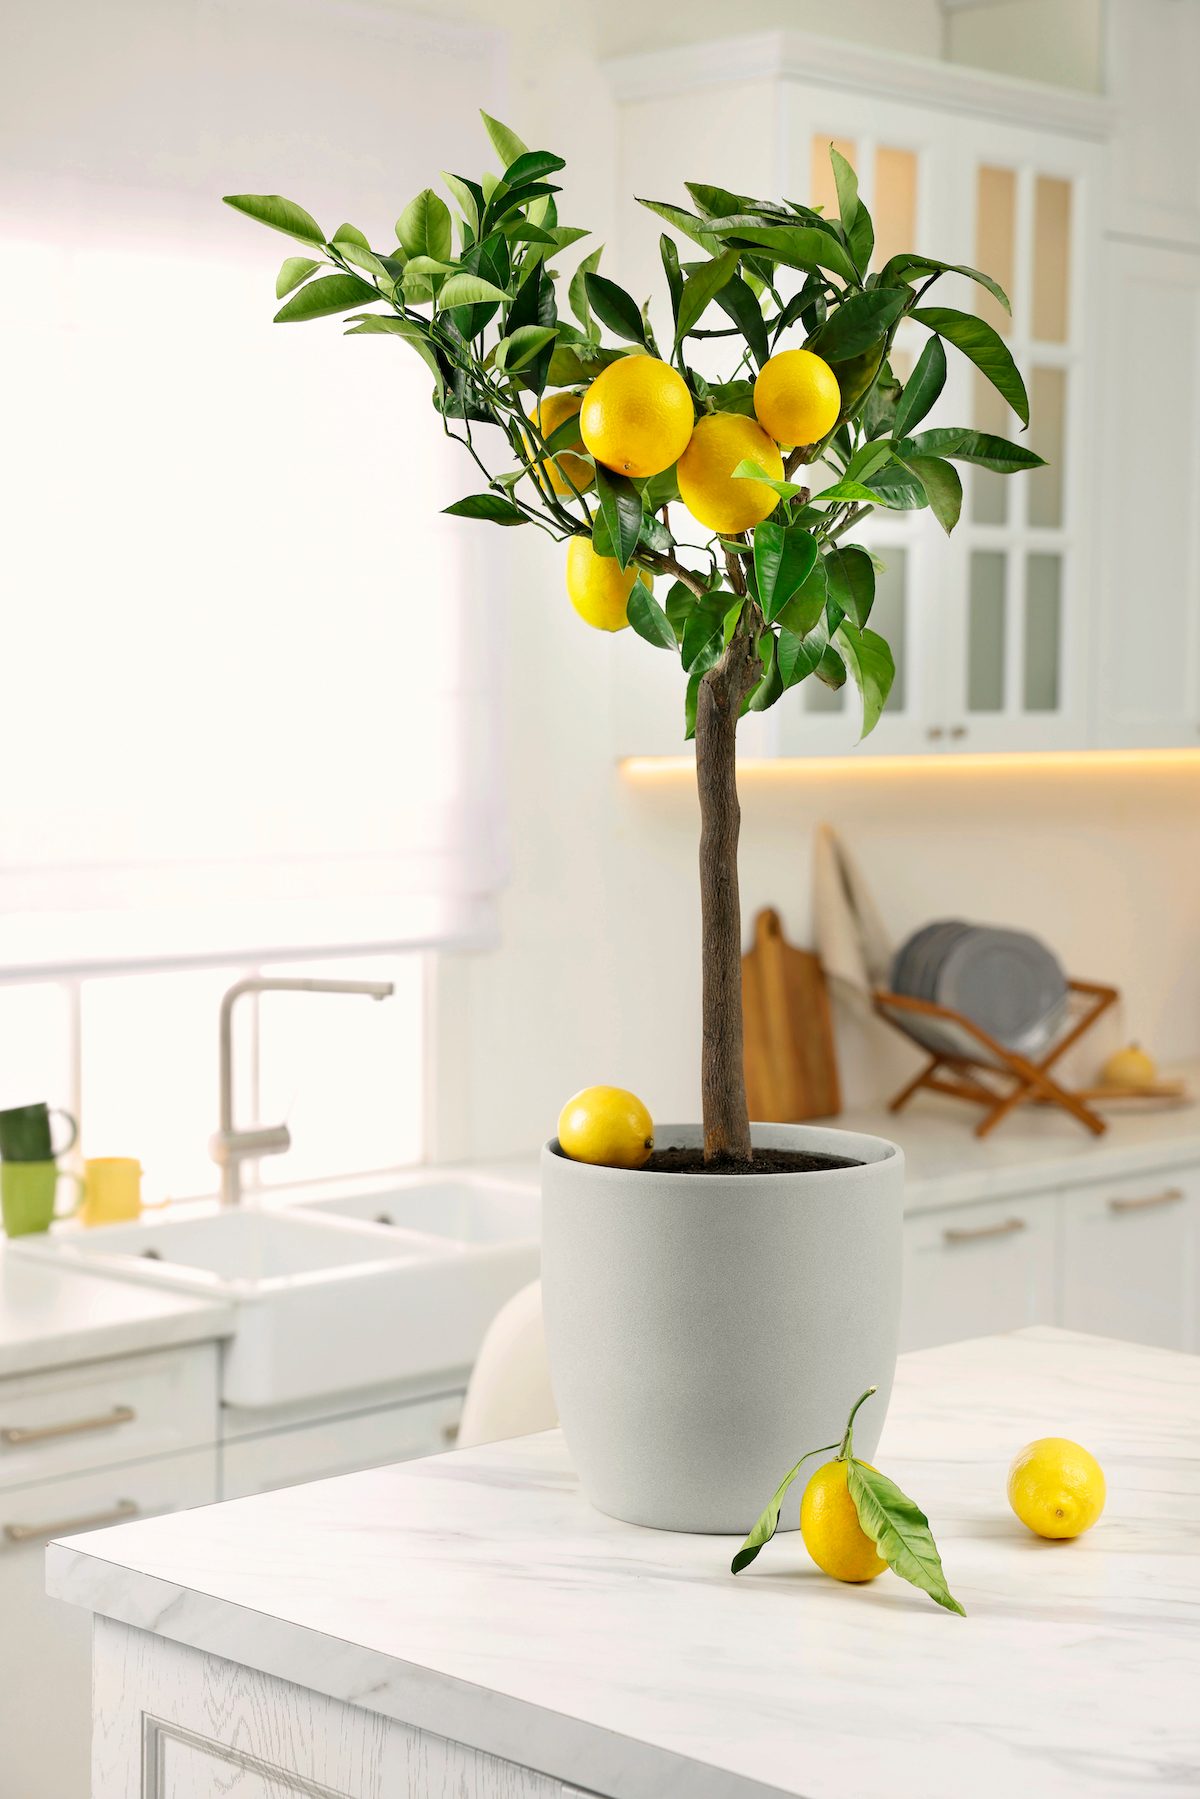  How to Grow an Indoor Lemon Tree